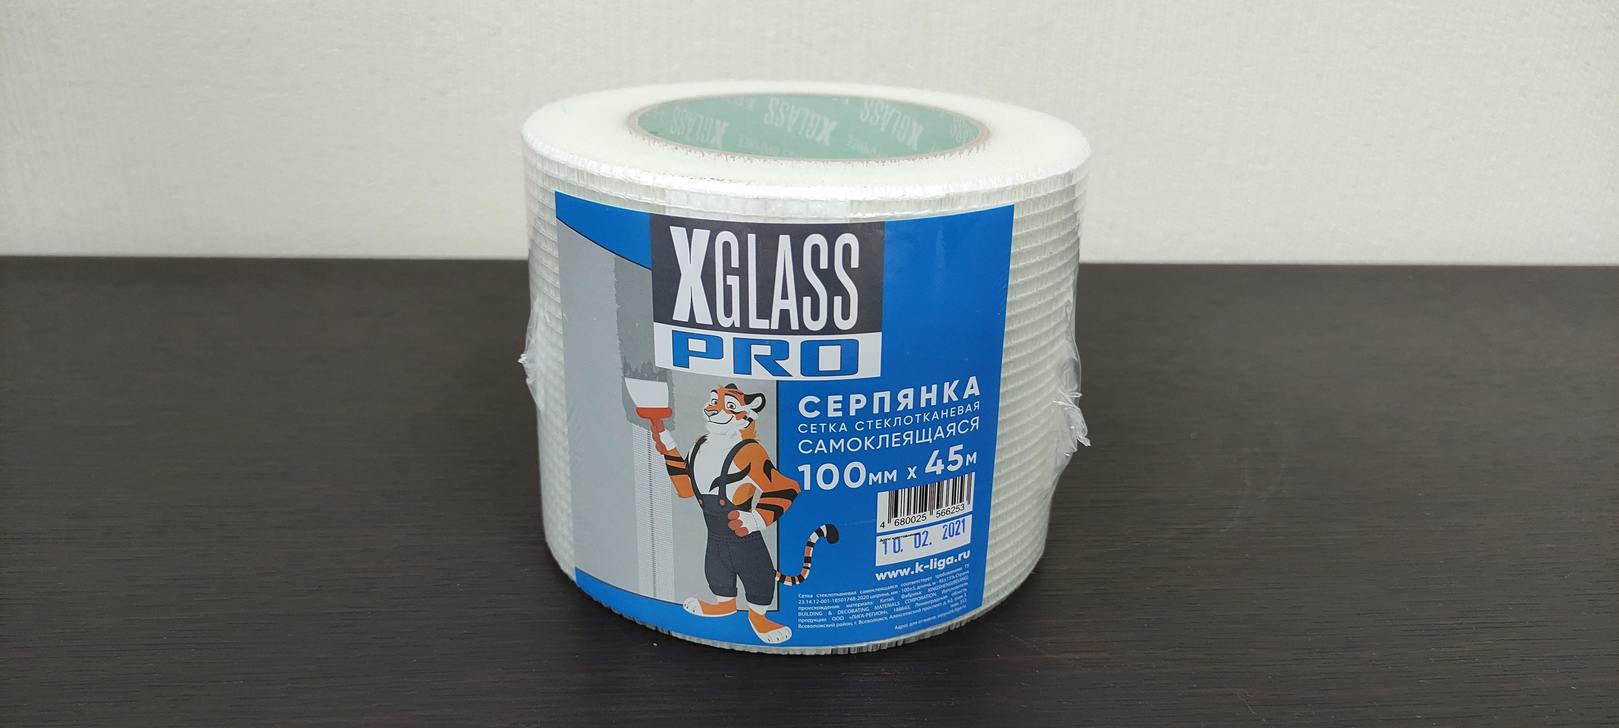 Сетка строительная самоклеящаяся (Серпянка) X-Glass 100 мм x 45 м